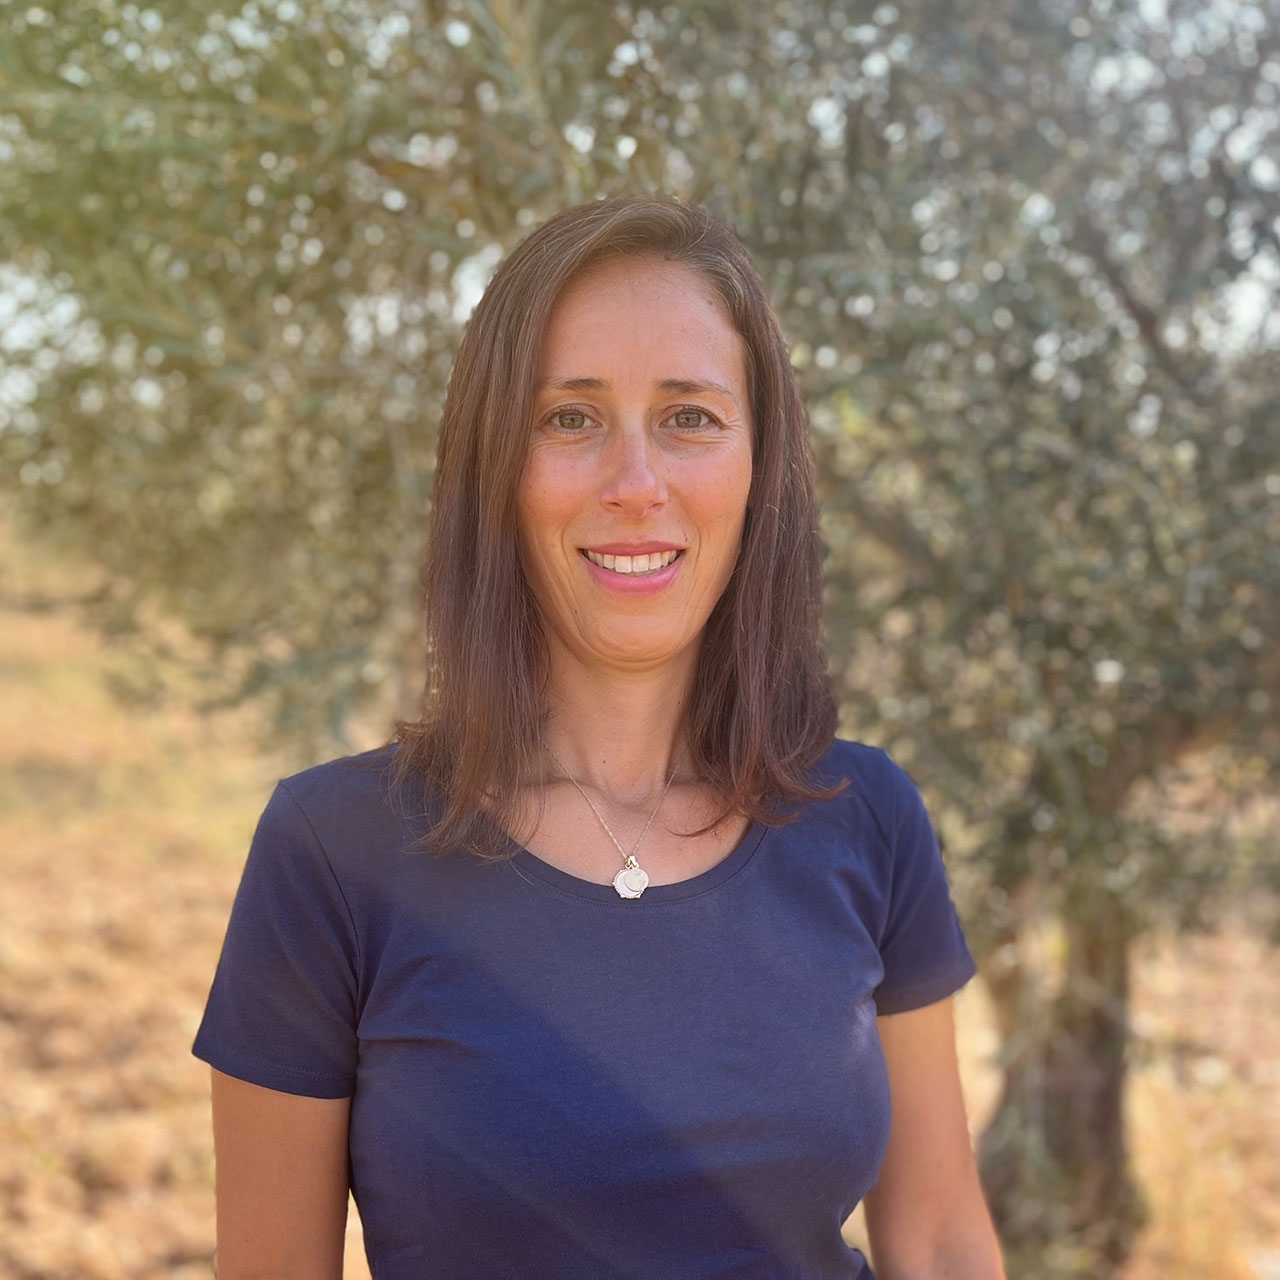 Ein Portraitfoto von Lidia, aufgenommen vor einem Olivenbaum im Sonnenschein.